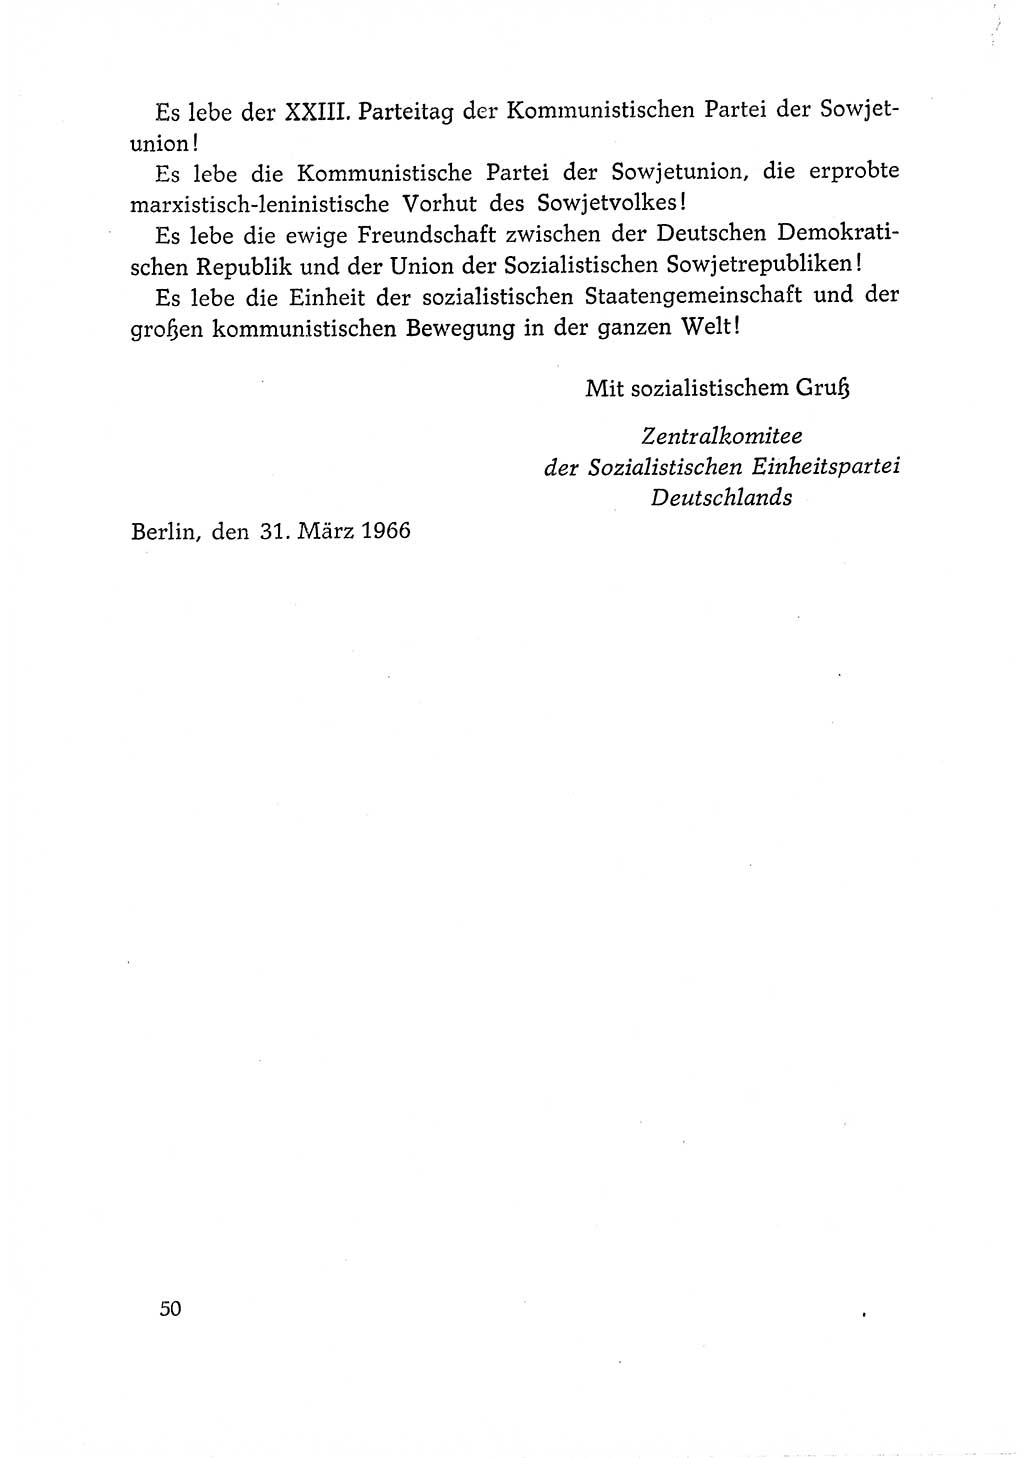 Dokumente der Sozialistischen Einheitspartei Deutschlands (SED) [Deutsche Demokratische Republik (DDR)] 1966-1967, Seite 50 (Dok. SED DDR 1966-1967, S. 50)